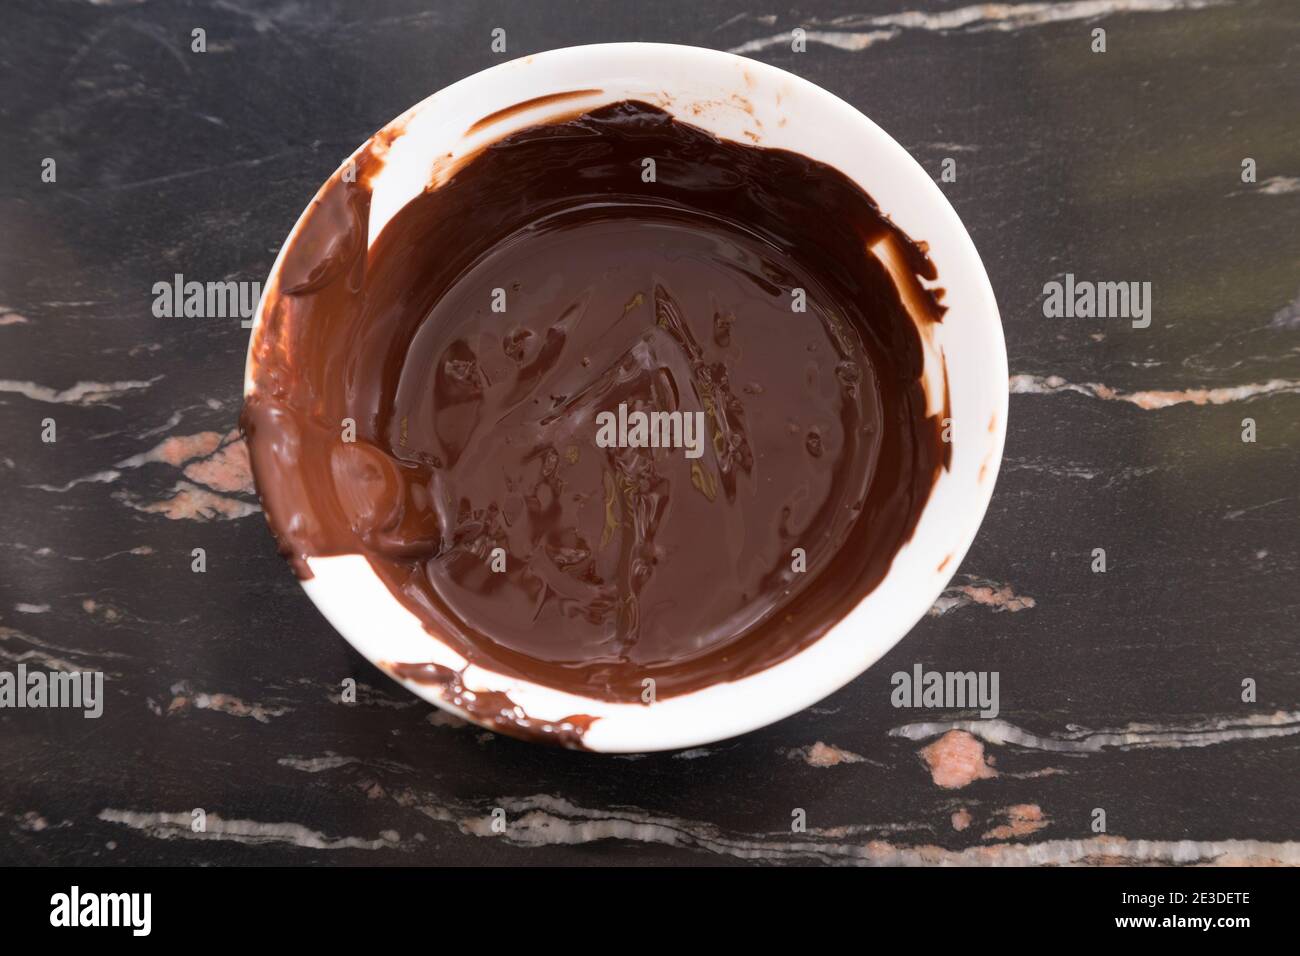 Chocolat chaud fondu dans un bol en plastique blanc. Gros plan. Banque D'Images